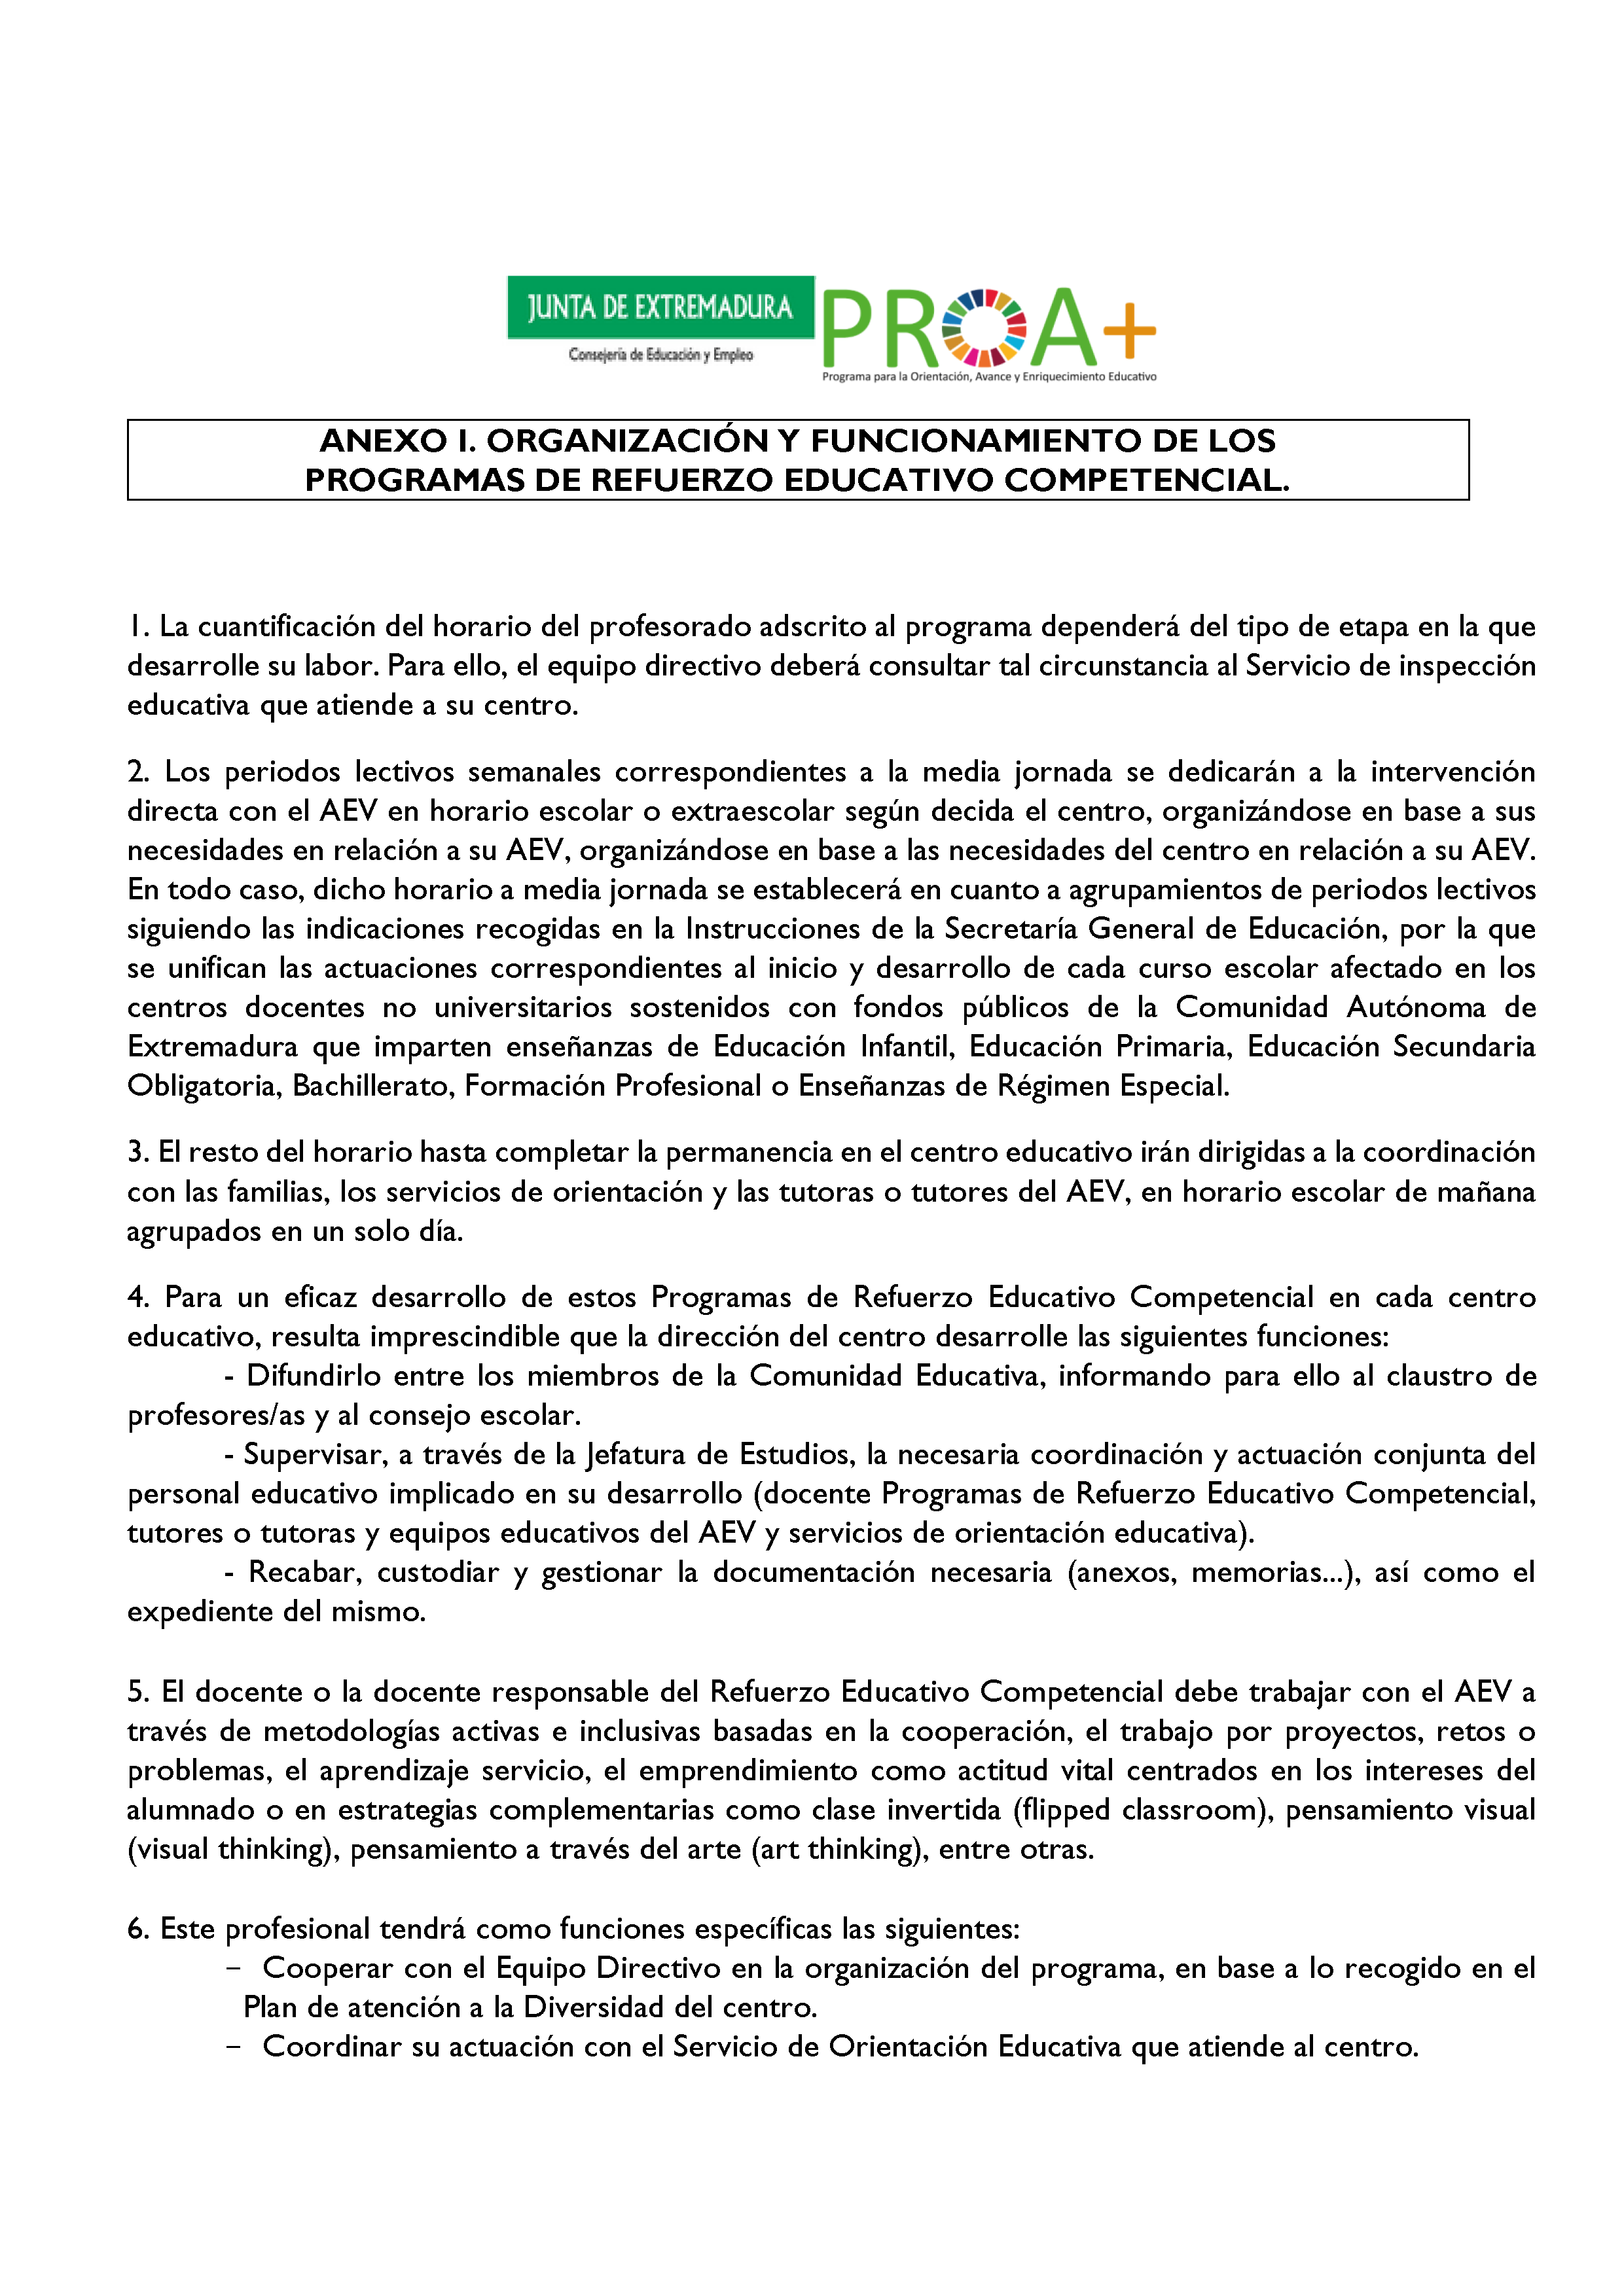 ANEXO I. ORGANIZACIÓN Y FUNCIONAMIENTO DE LOS PROGRAMAS DE REFUERZO EDUCATIVO COMPETENCIAL. Pag 1